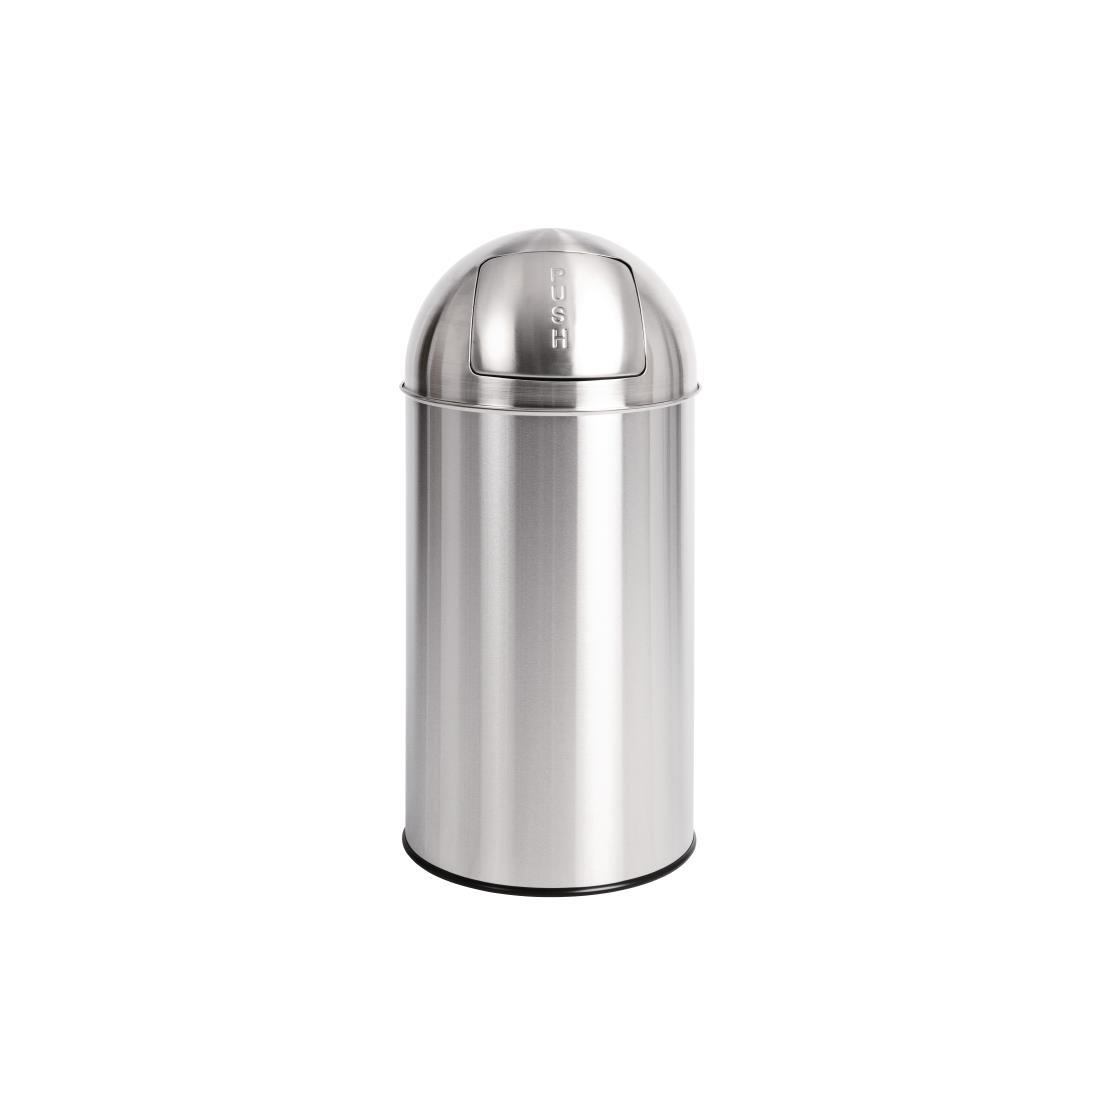 Bolero Stainless Steel Push Top Bullet Bin Silver 40Ltr - U803  - 1